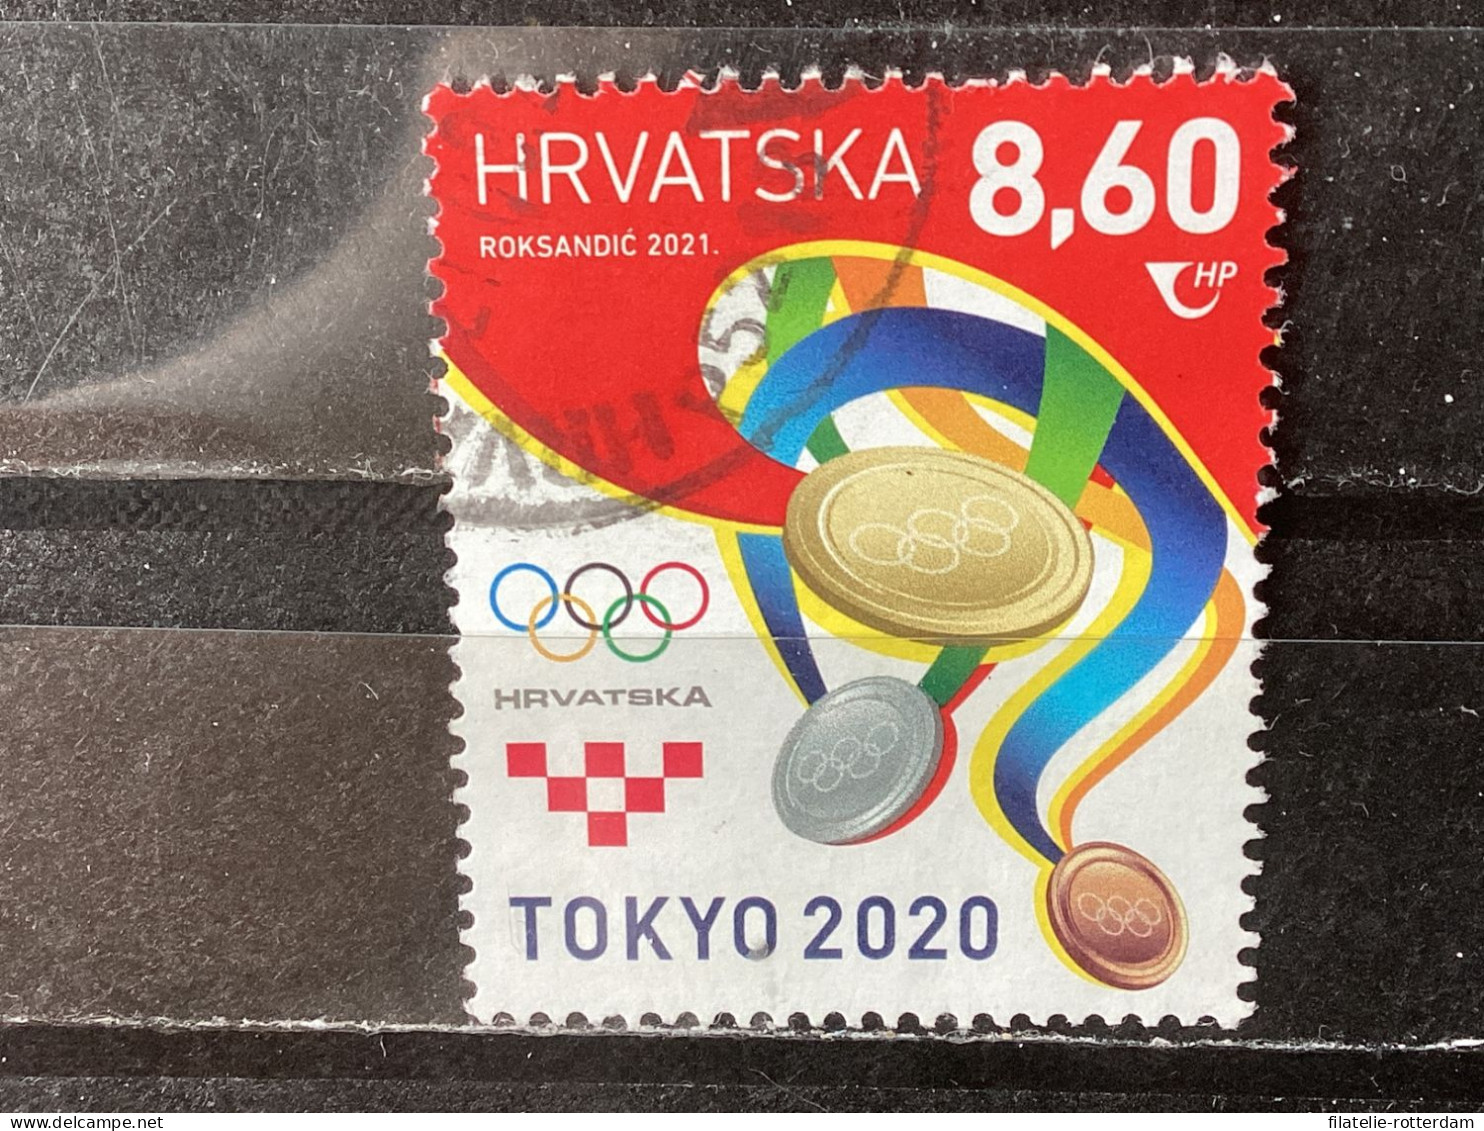 Croatia / Kroatië - Olympic Games (8.60) 2021 - Kroatien